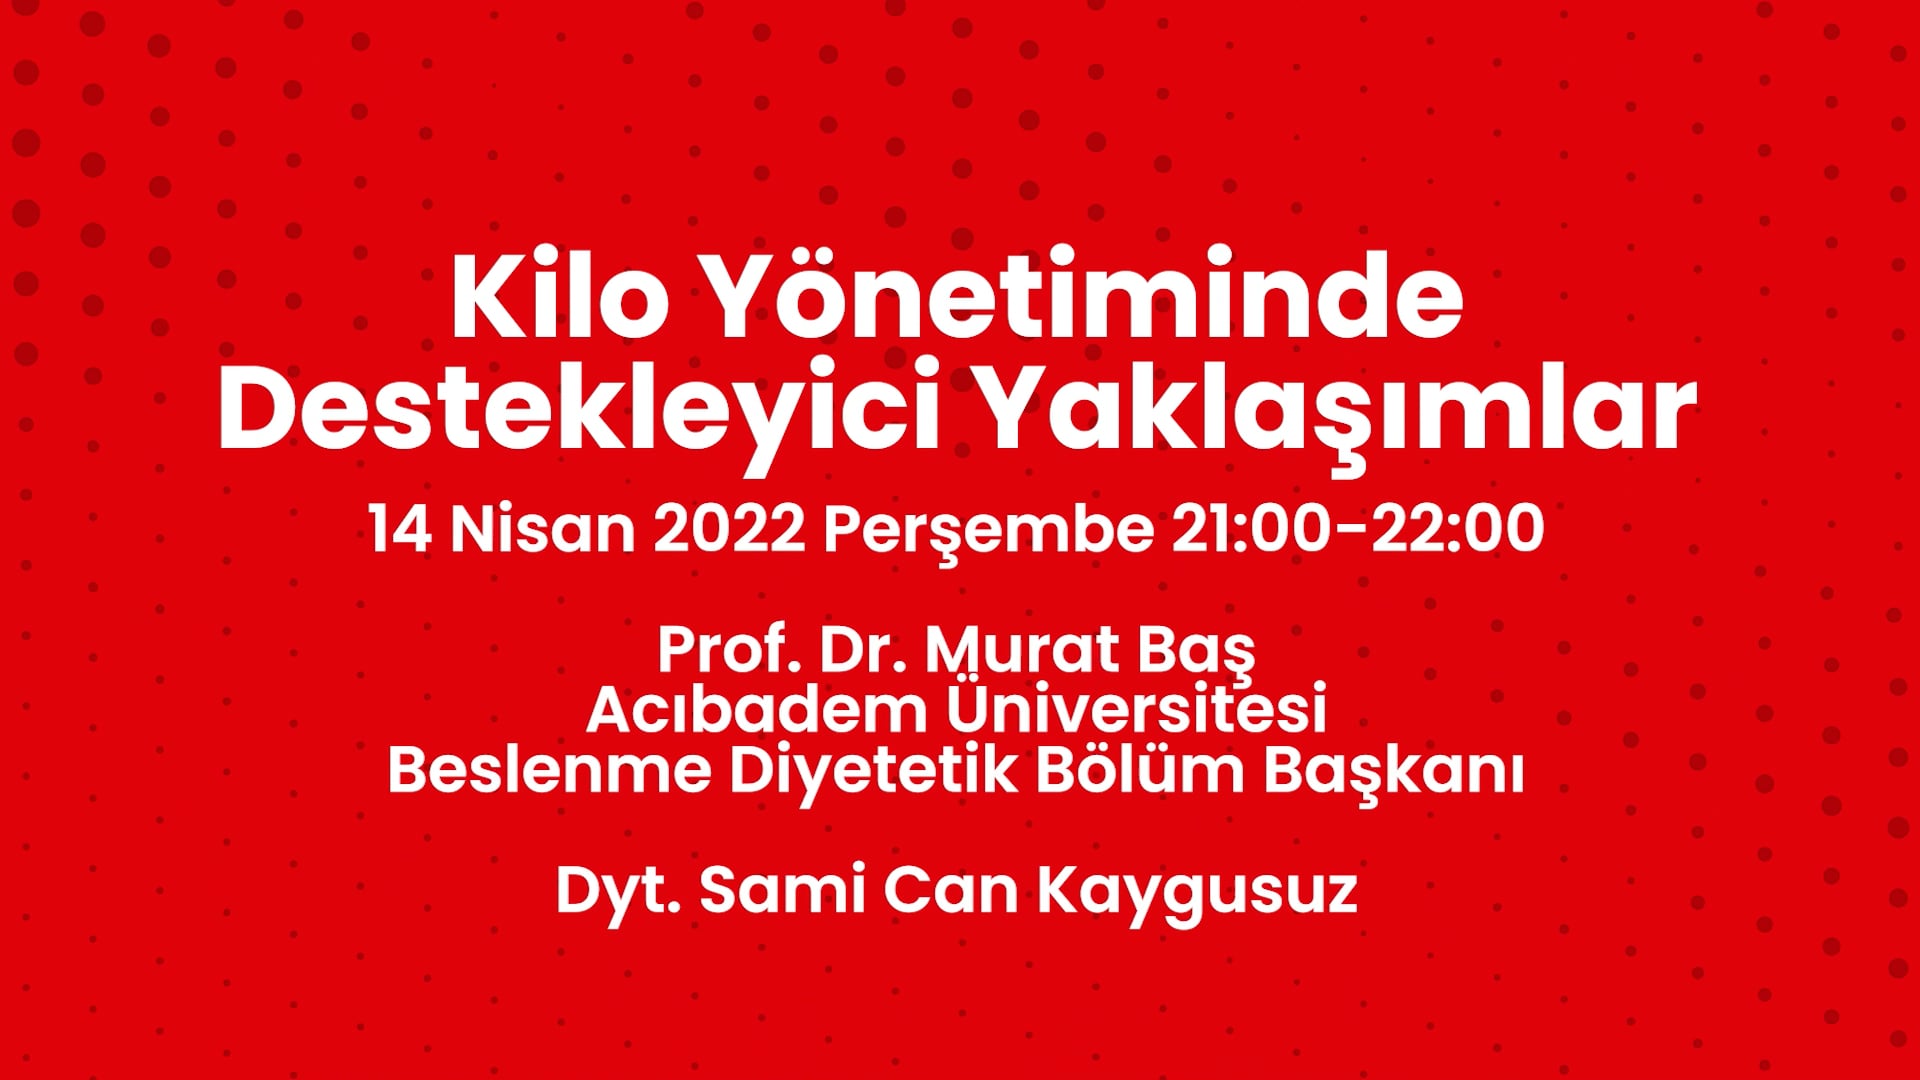 2022-04-14-Kilo Yönetiminde Destekleyici Yaklaşımlar- Prof. Dr. Murat Baş, Dyt. Sami Can Kaygusuz